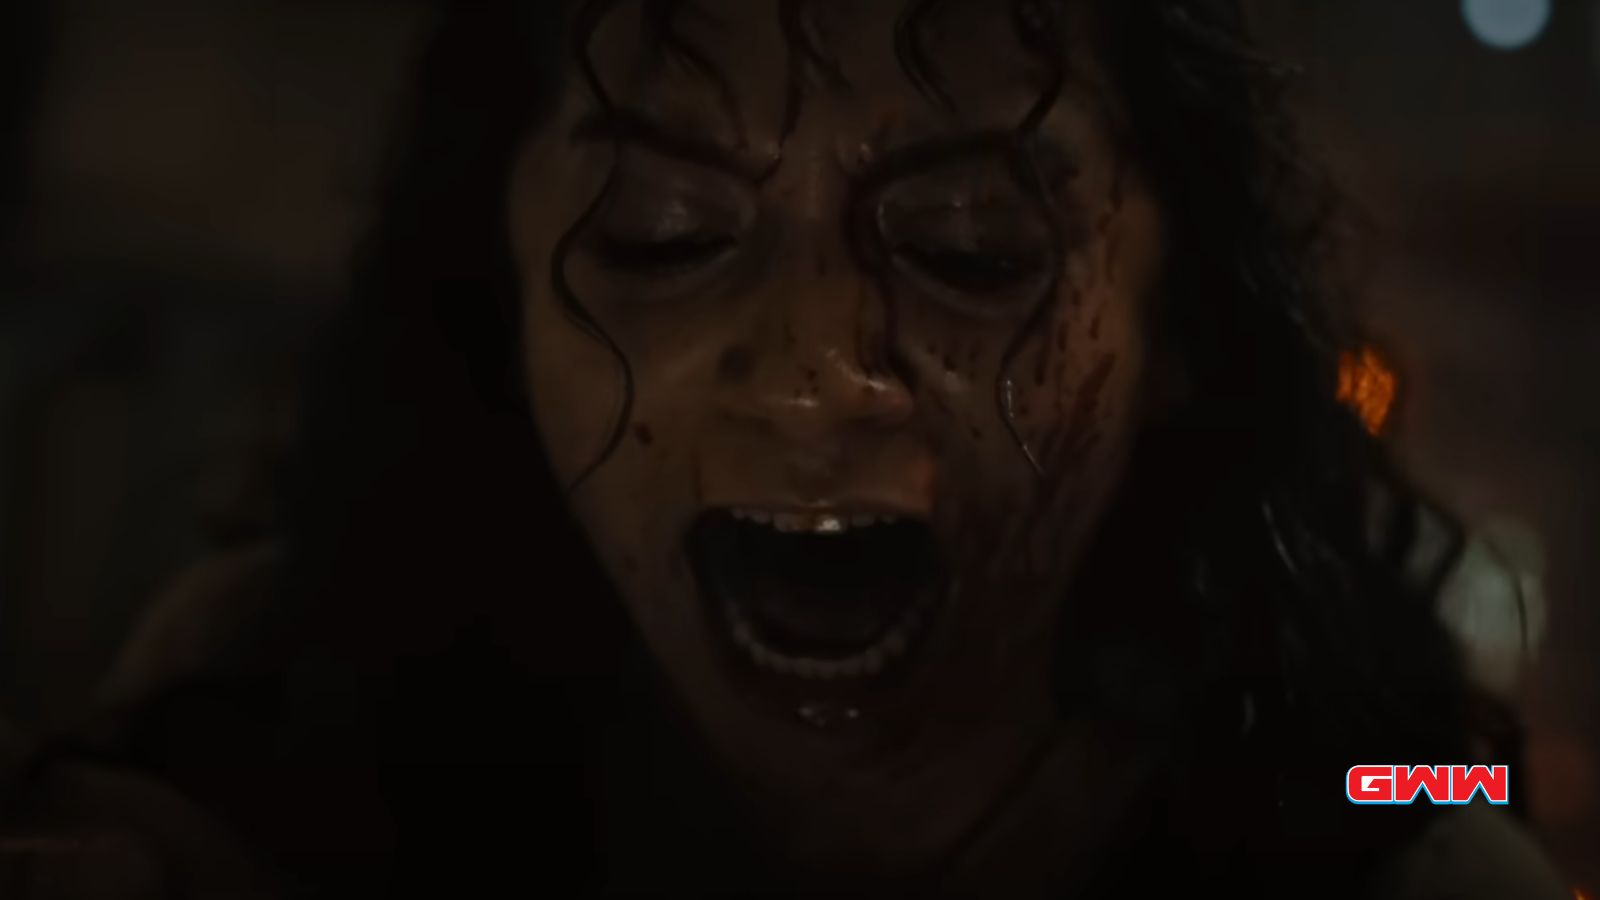 Kay gritando con el rostro cubierto de sangre en una escena oscura.